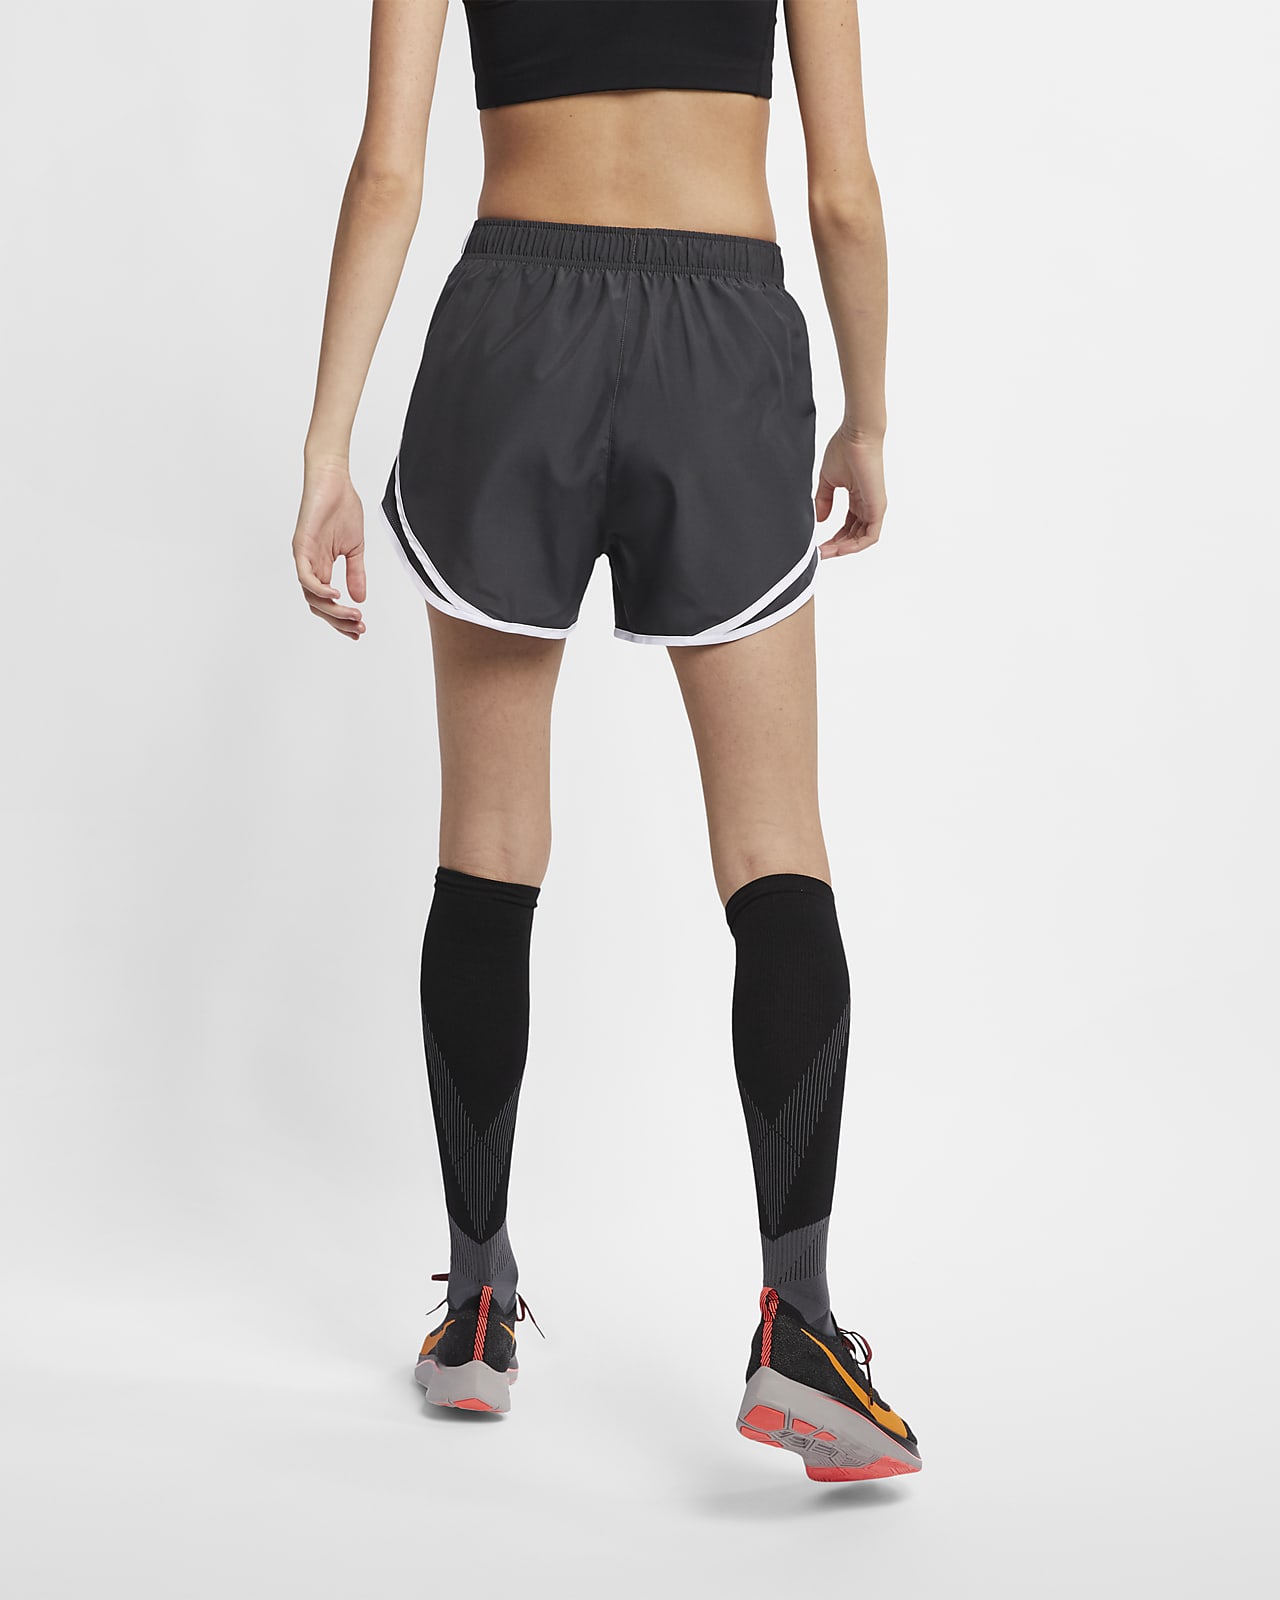 Las mejores ofertas en Pantalones de mujer Nike